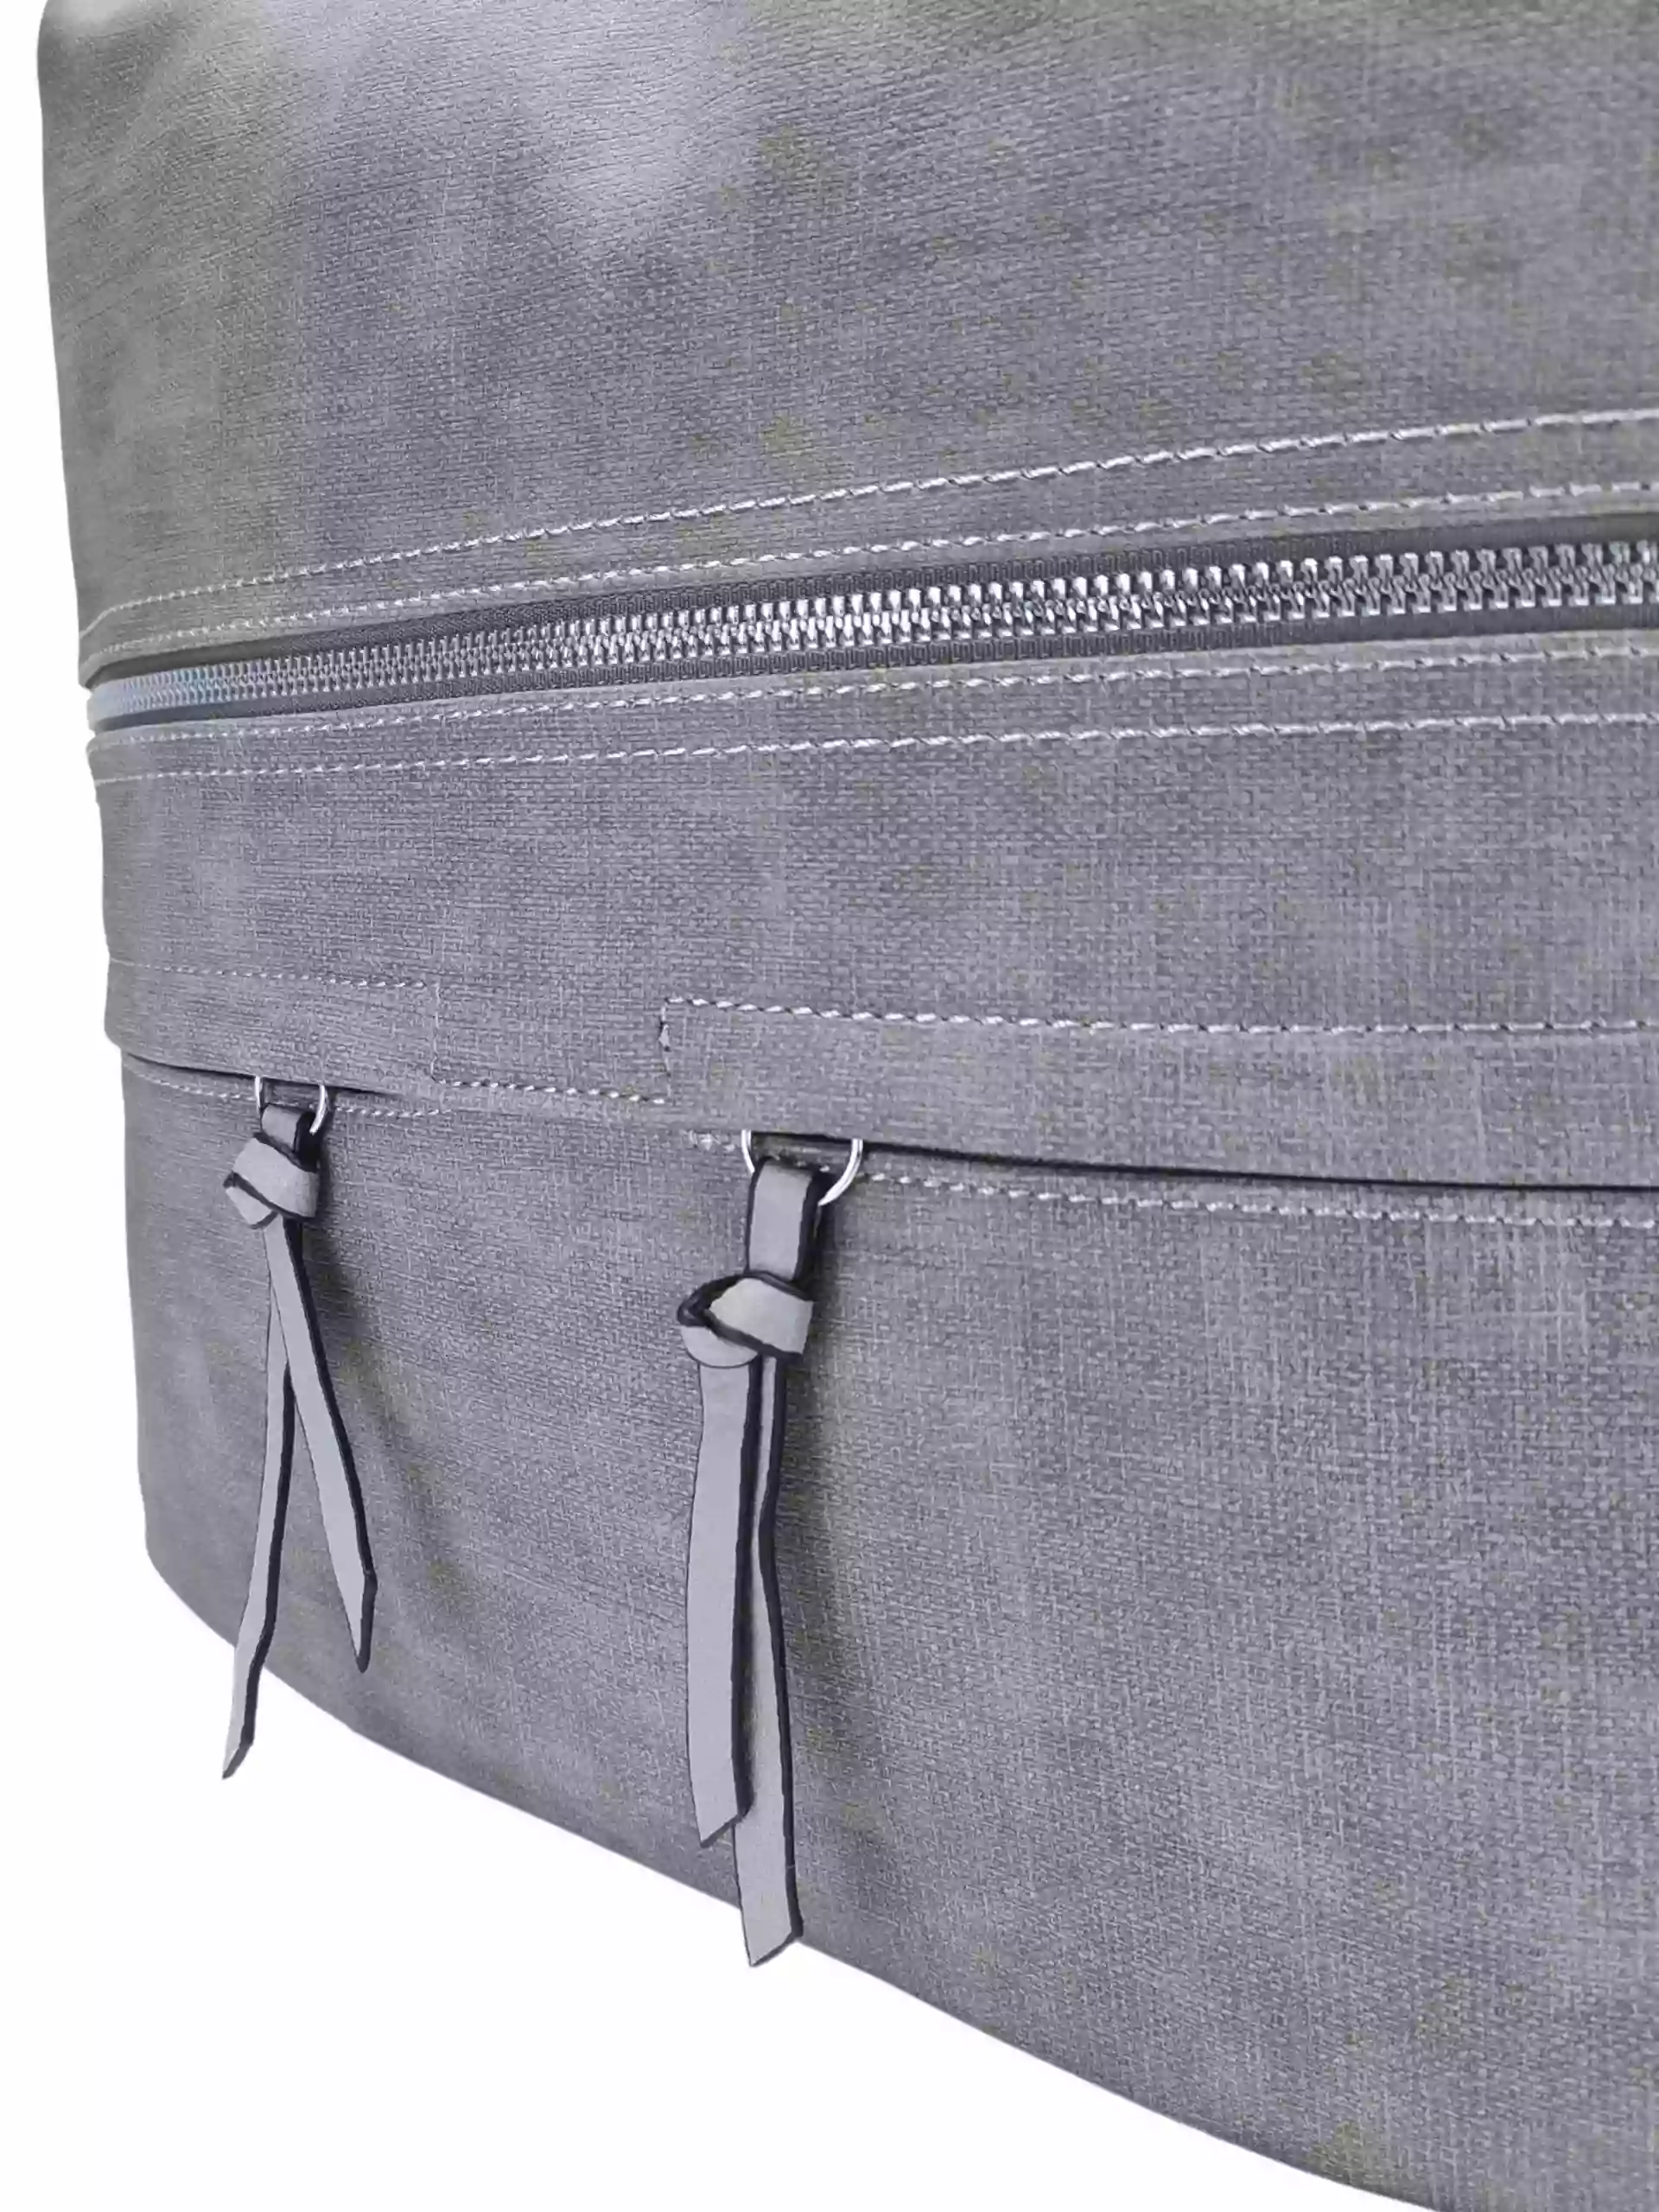 Velká světle šedá kabelka a batoh 2v1 s kapsami, Tapple, H181175N, detail přední strany kabelky a batohu 2v1